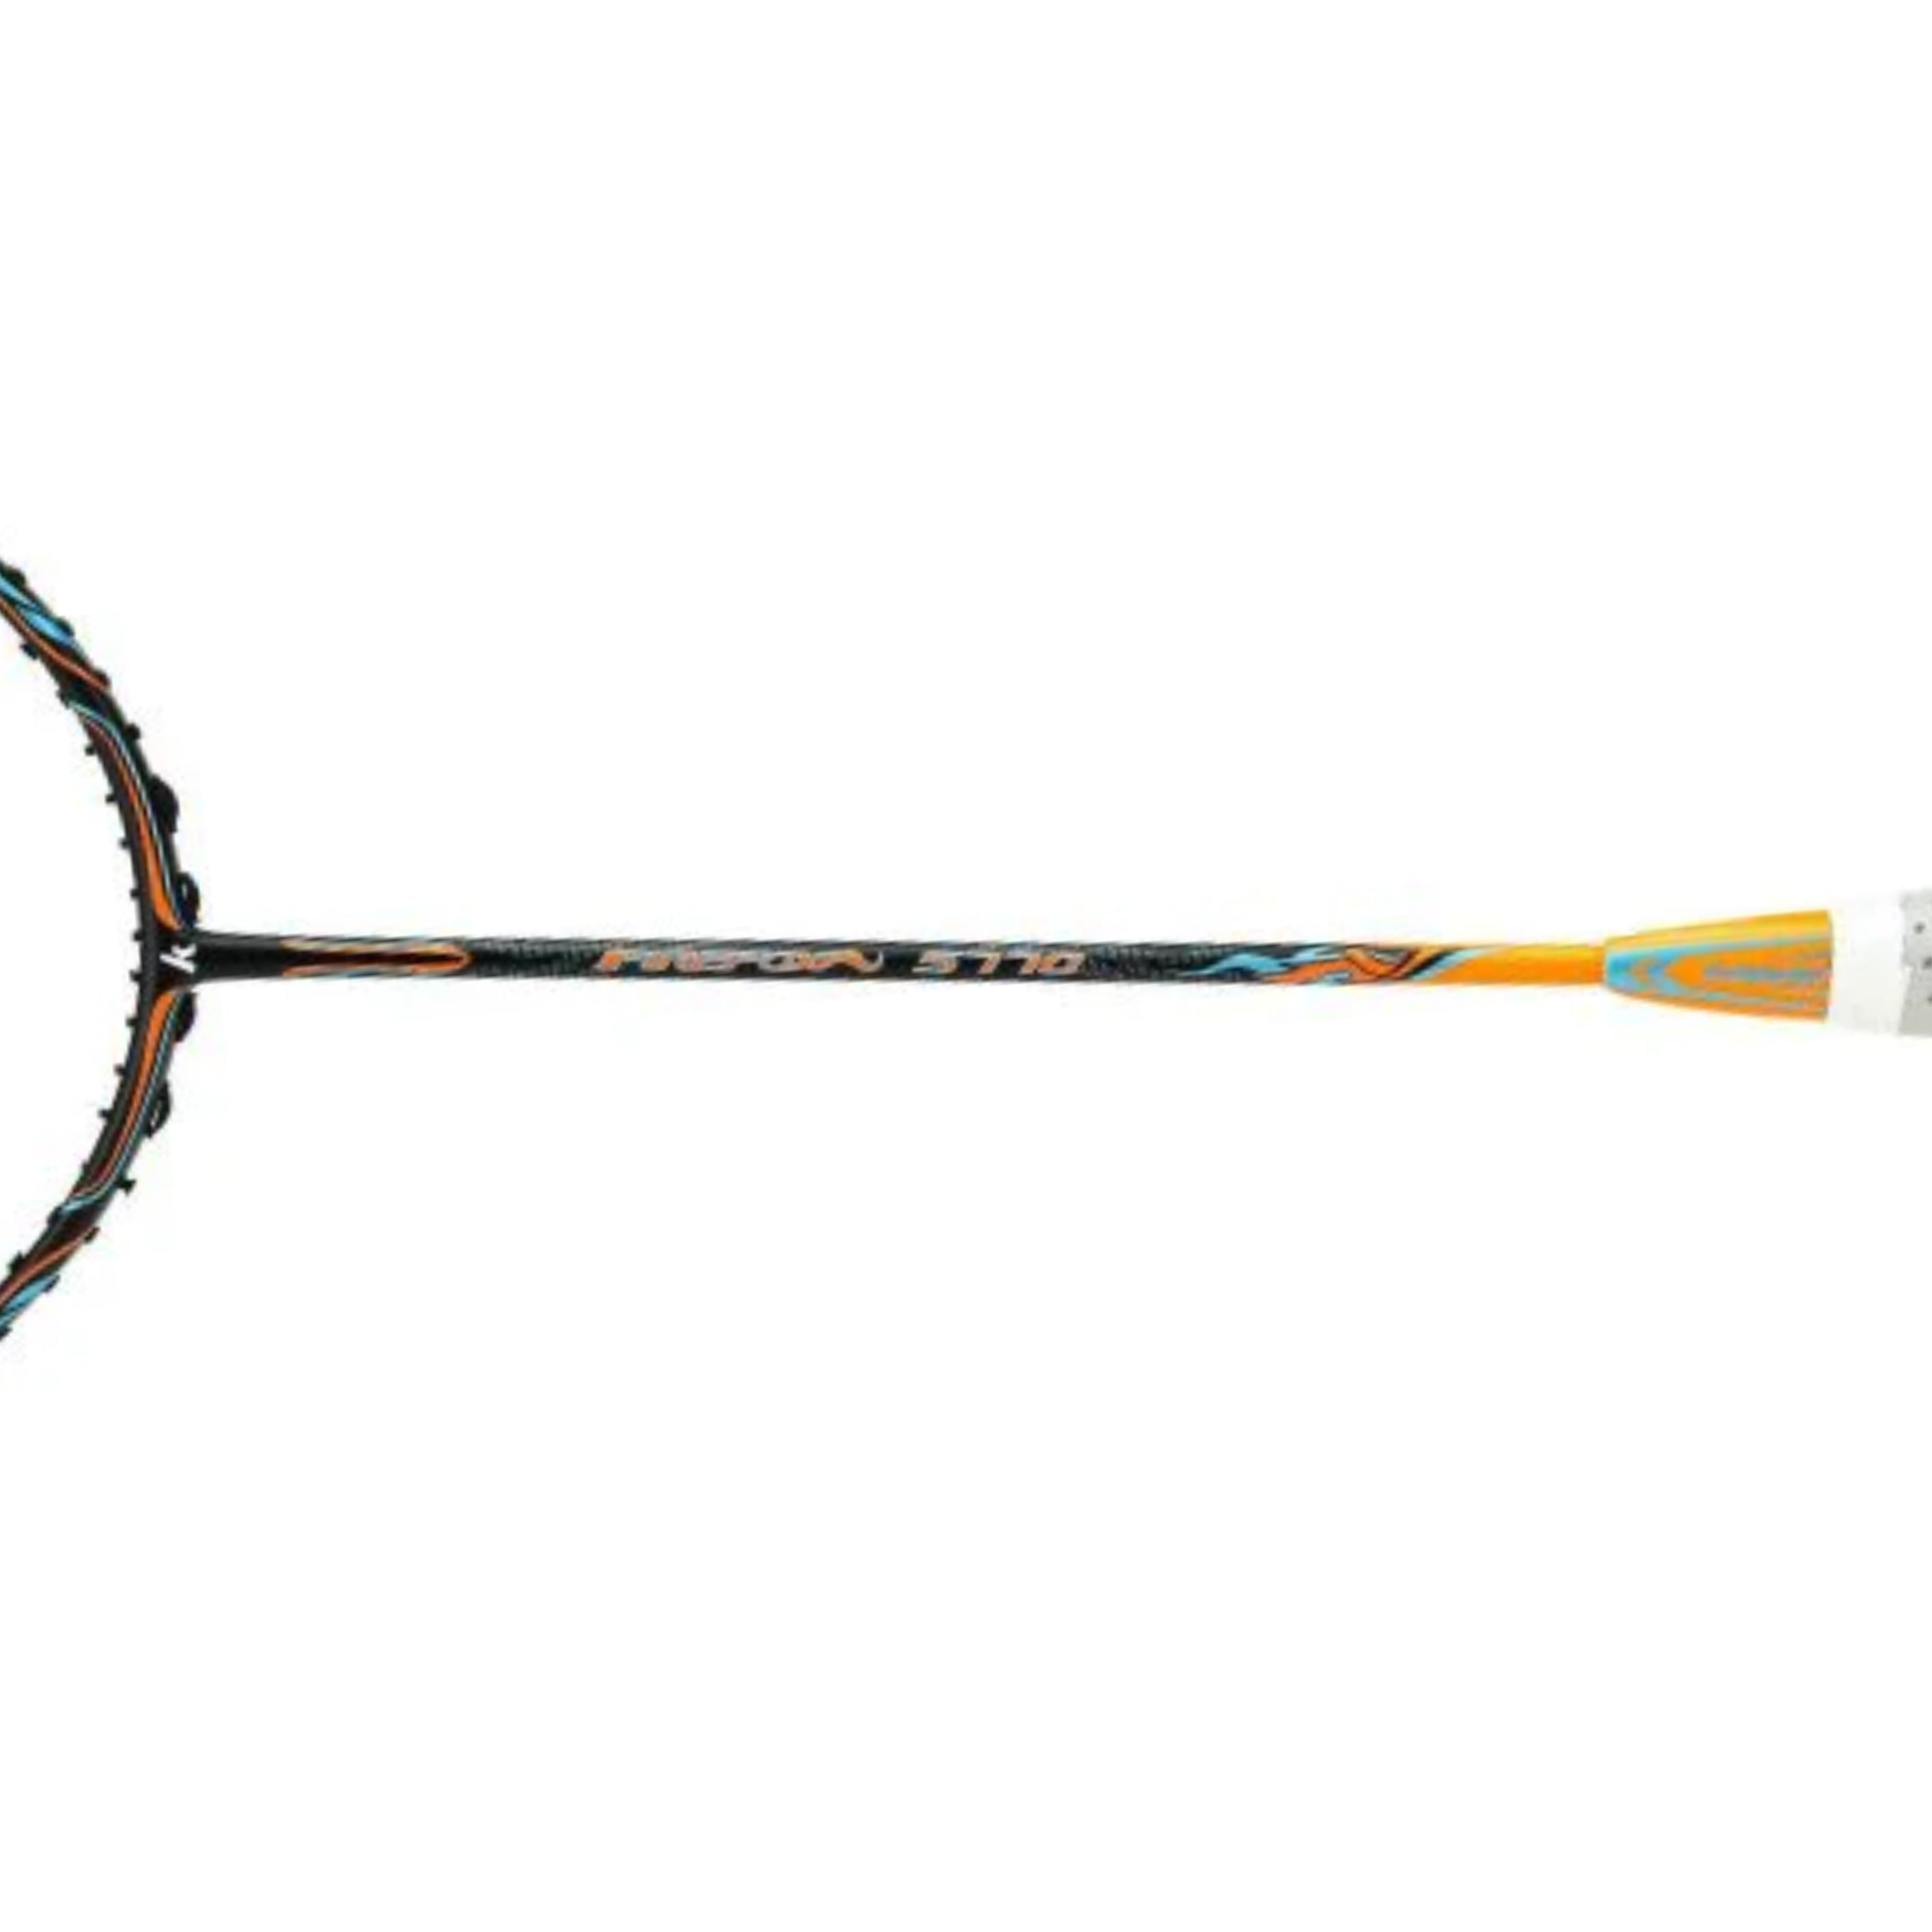 Firefox 5770 Unstrung Badminton Racket (Orange)